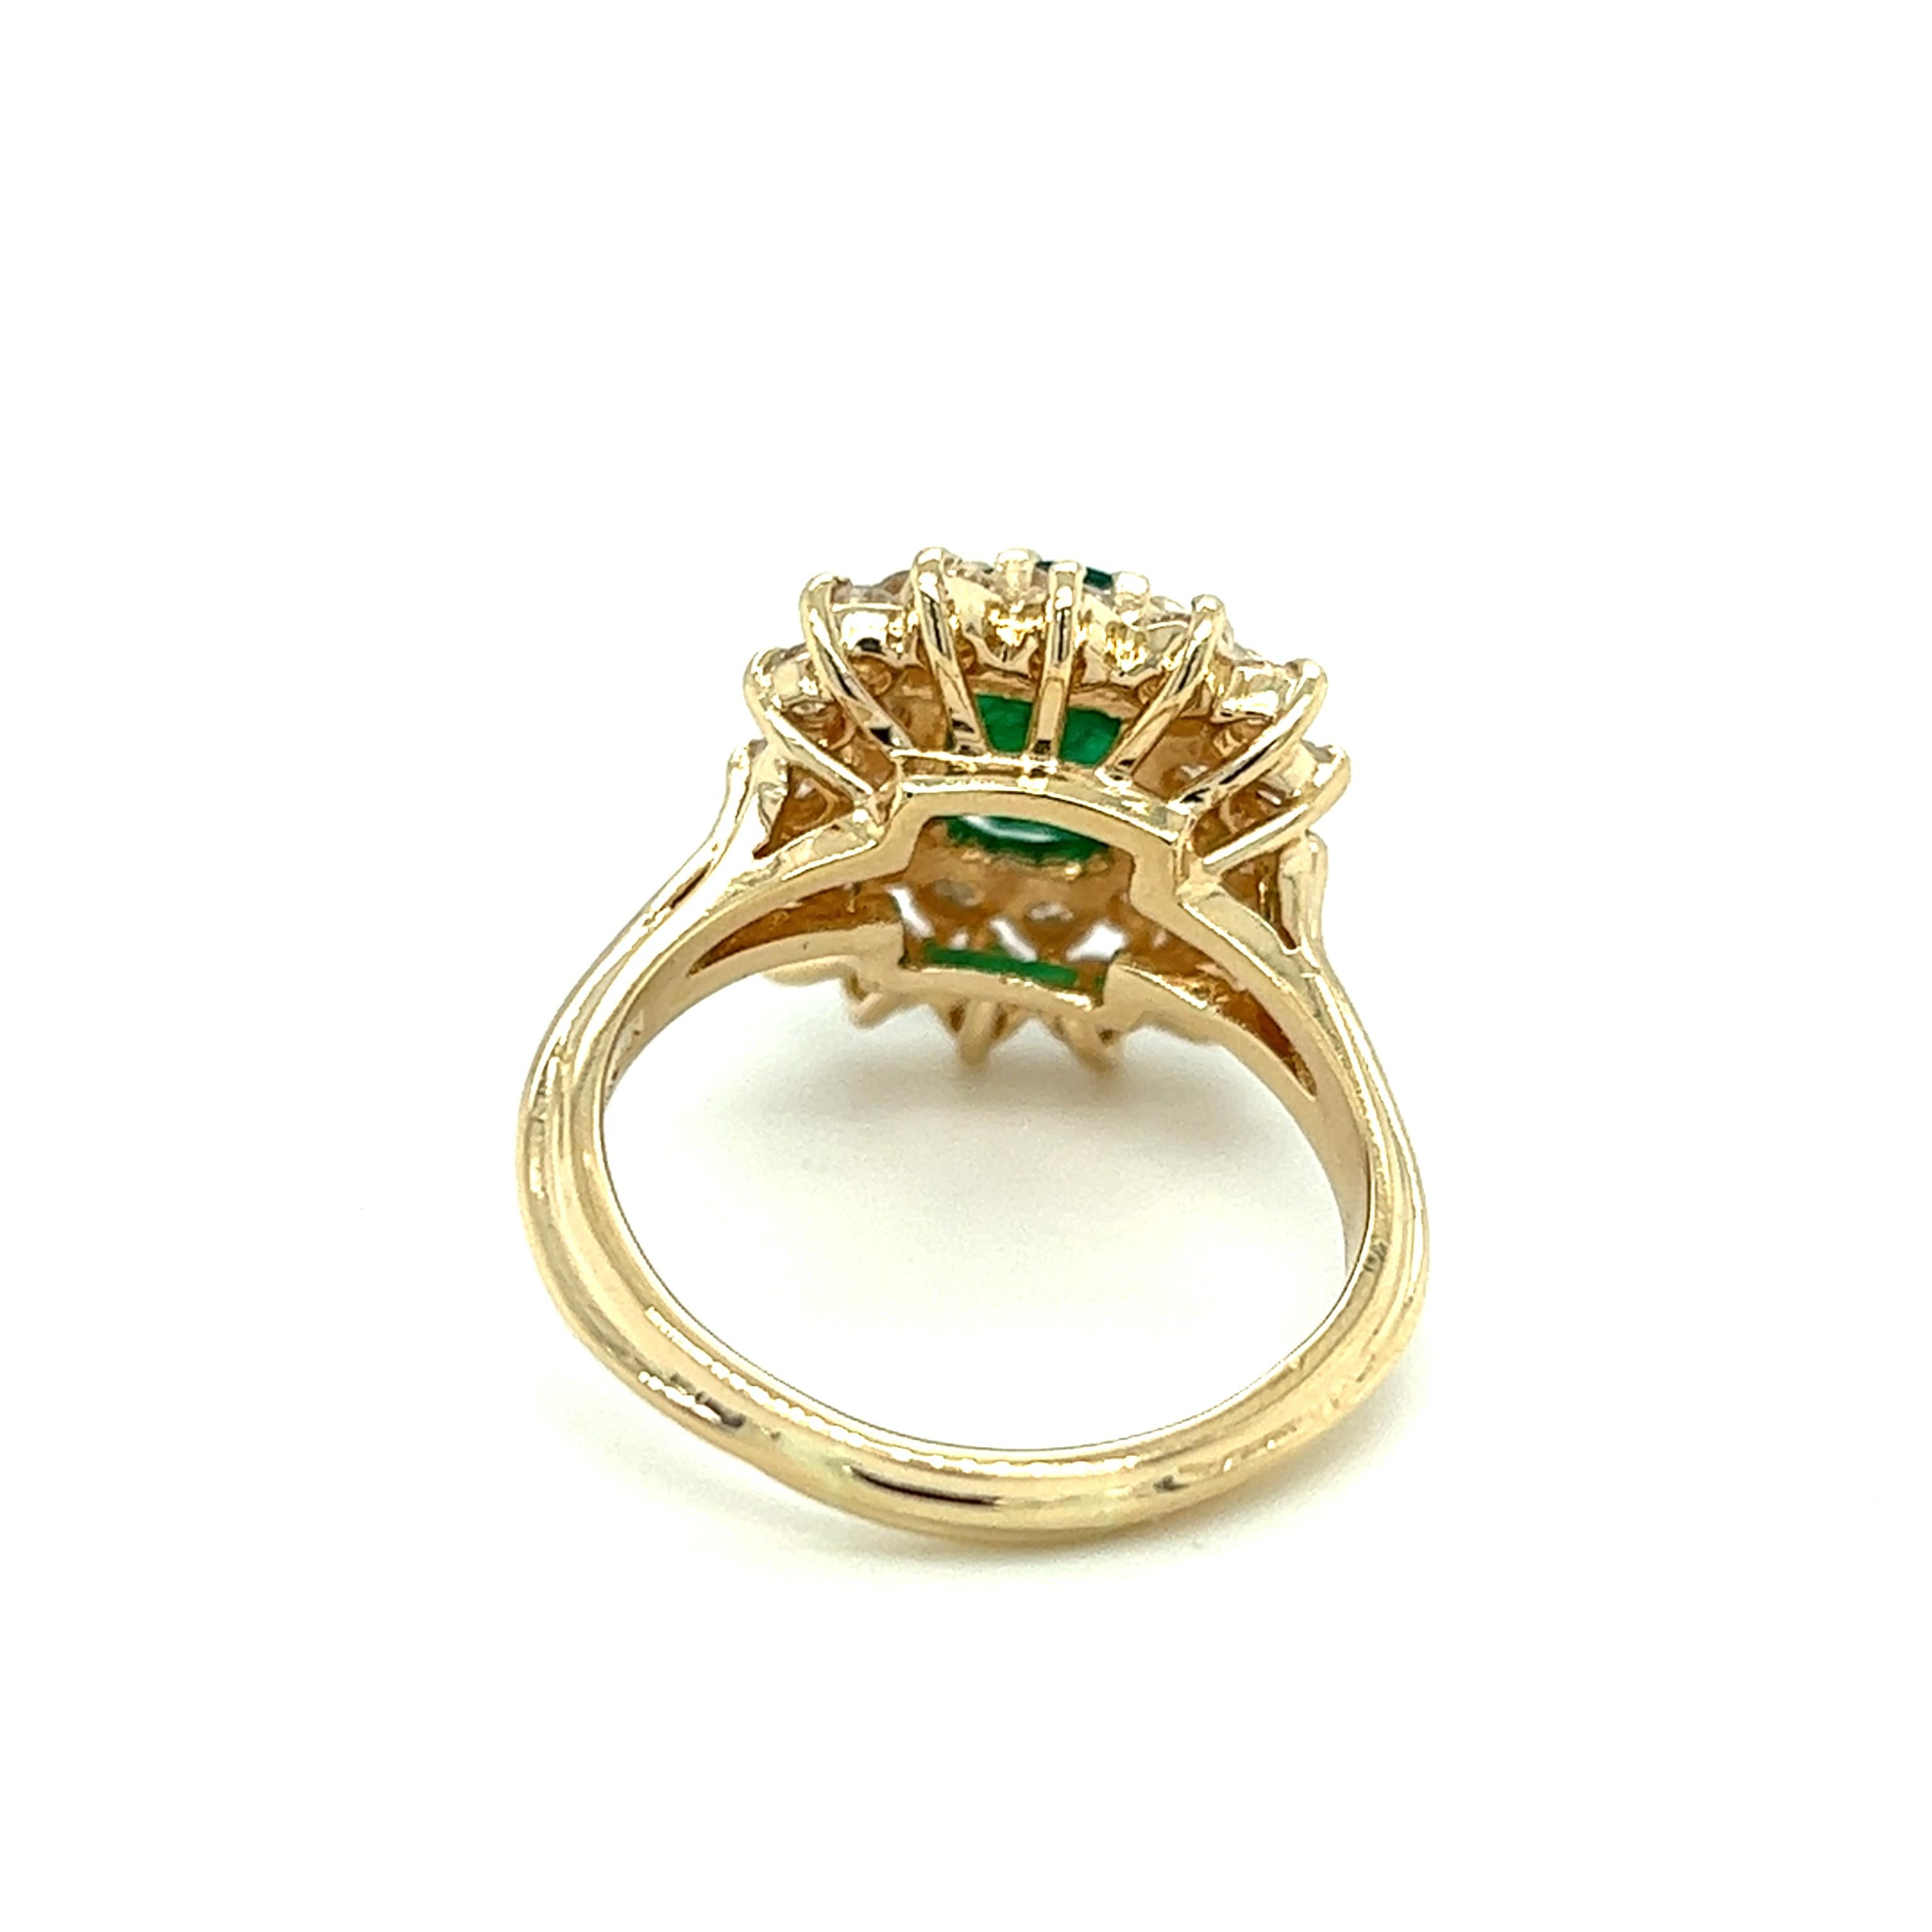 Ein kissenförmiger Ring aus 14-karätigem Gelbgold, besetzt mit einem (1) ovalen natürlichen Smaragd von 1,89 Karat und achtundzwanzig (28) runden Diamanten im Brillantschliff, Gesamtgewicht ca. 1,54 Karat, Farbe H/I und Reinheit SI1. Der Ring hat